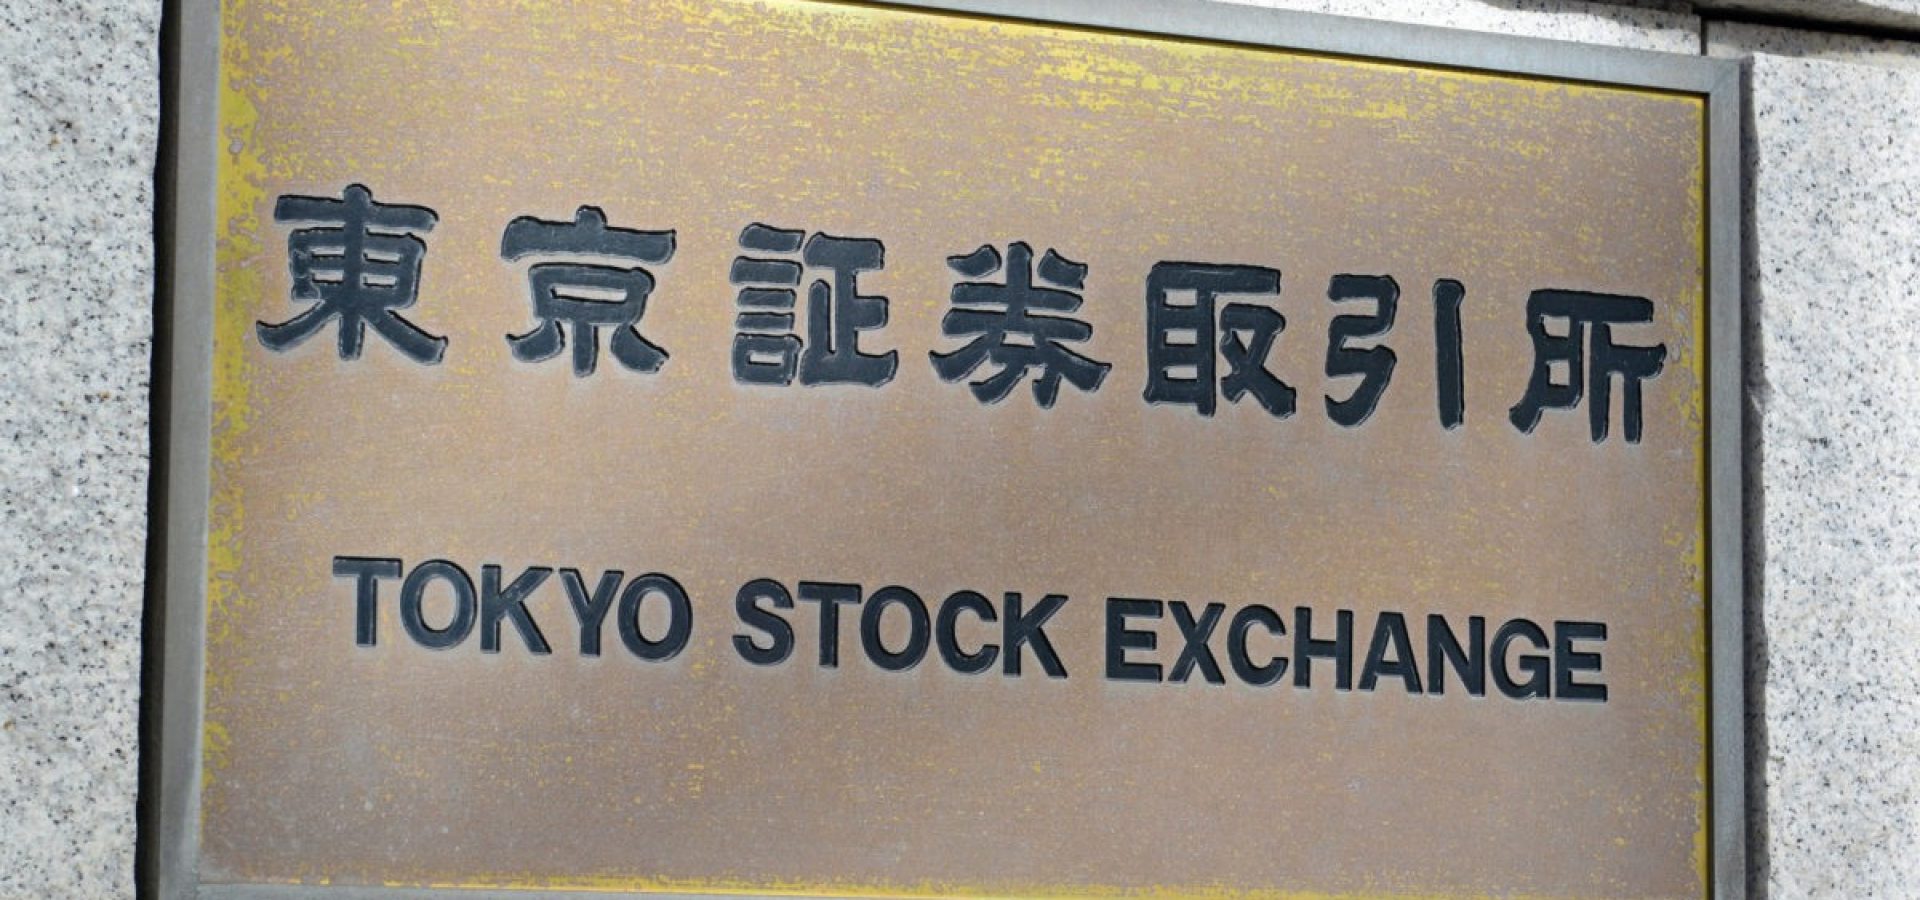 Asian stocks on Thursday